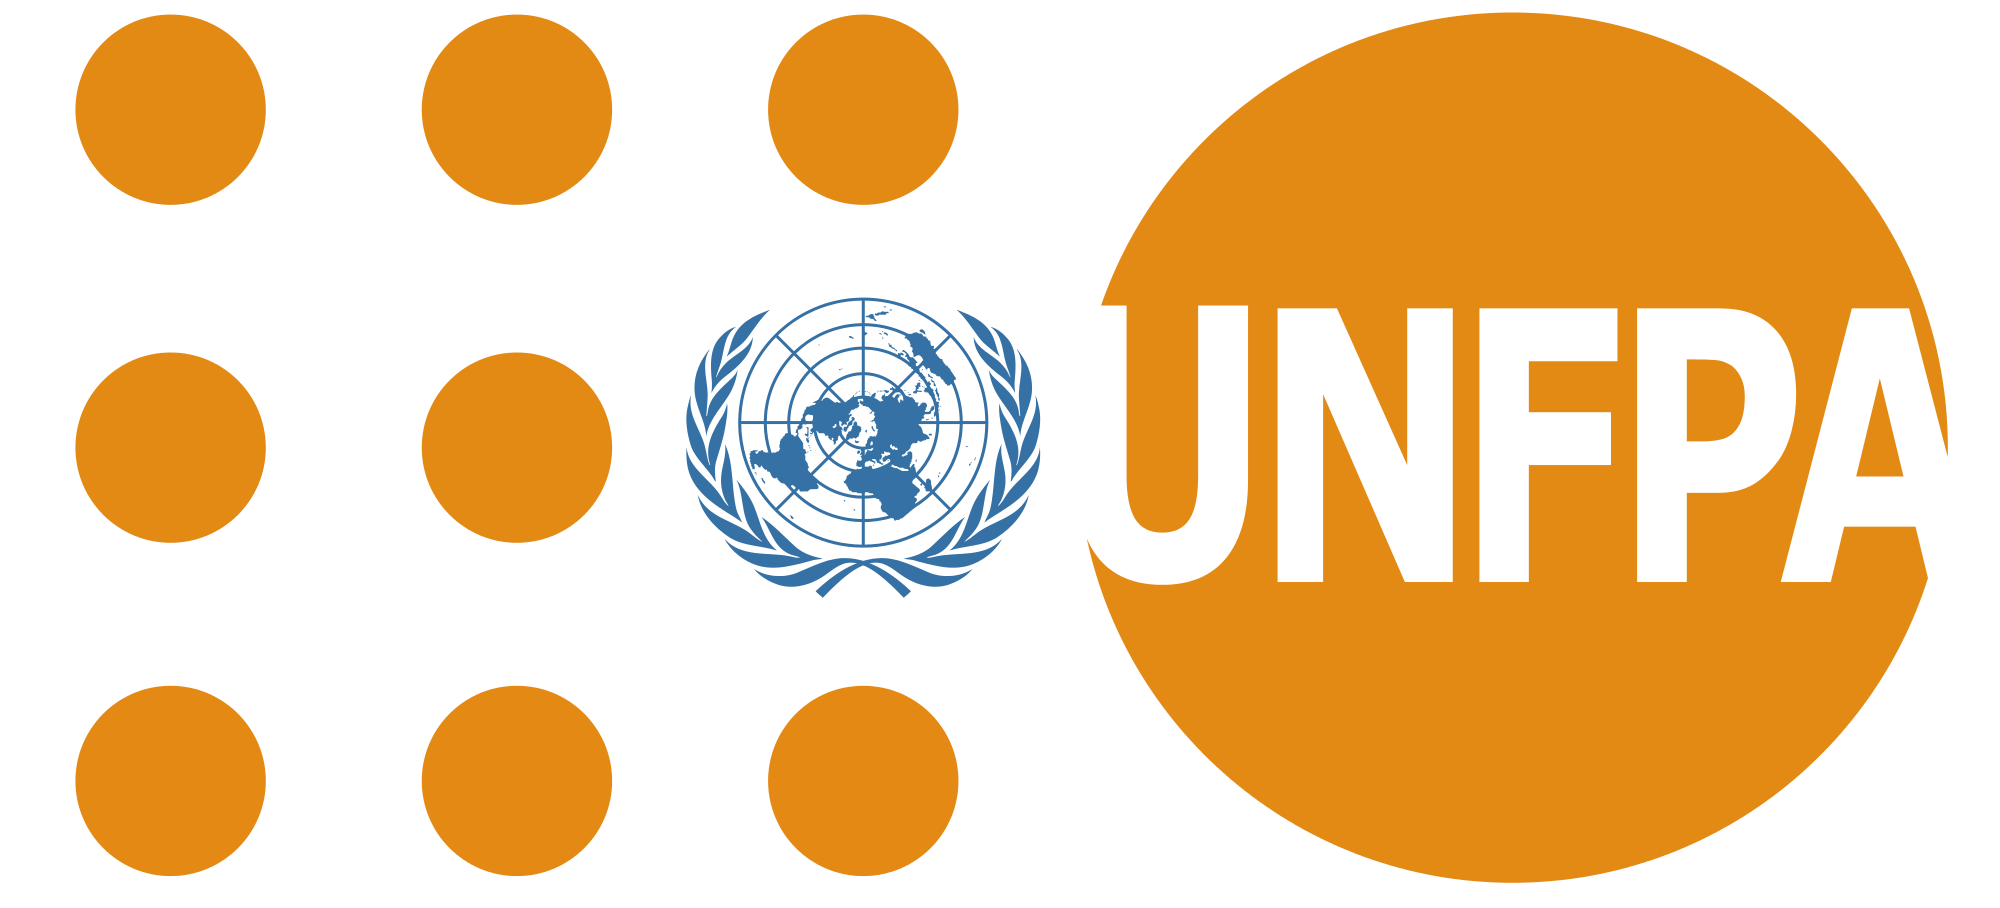 UNFPA_logo.svg